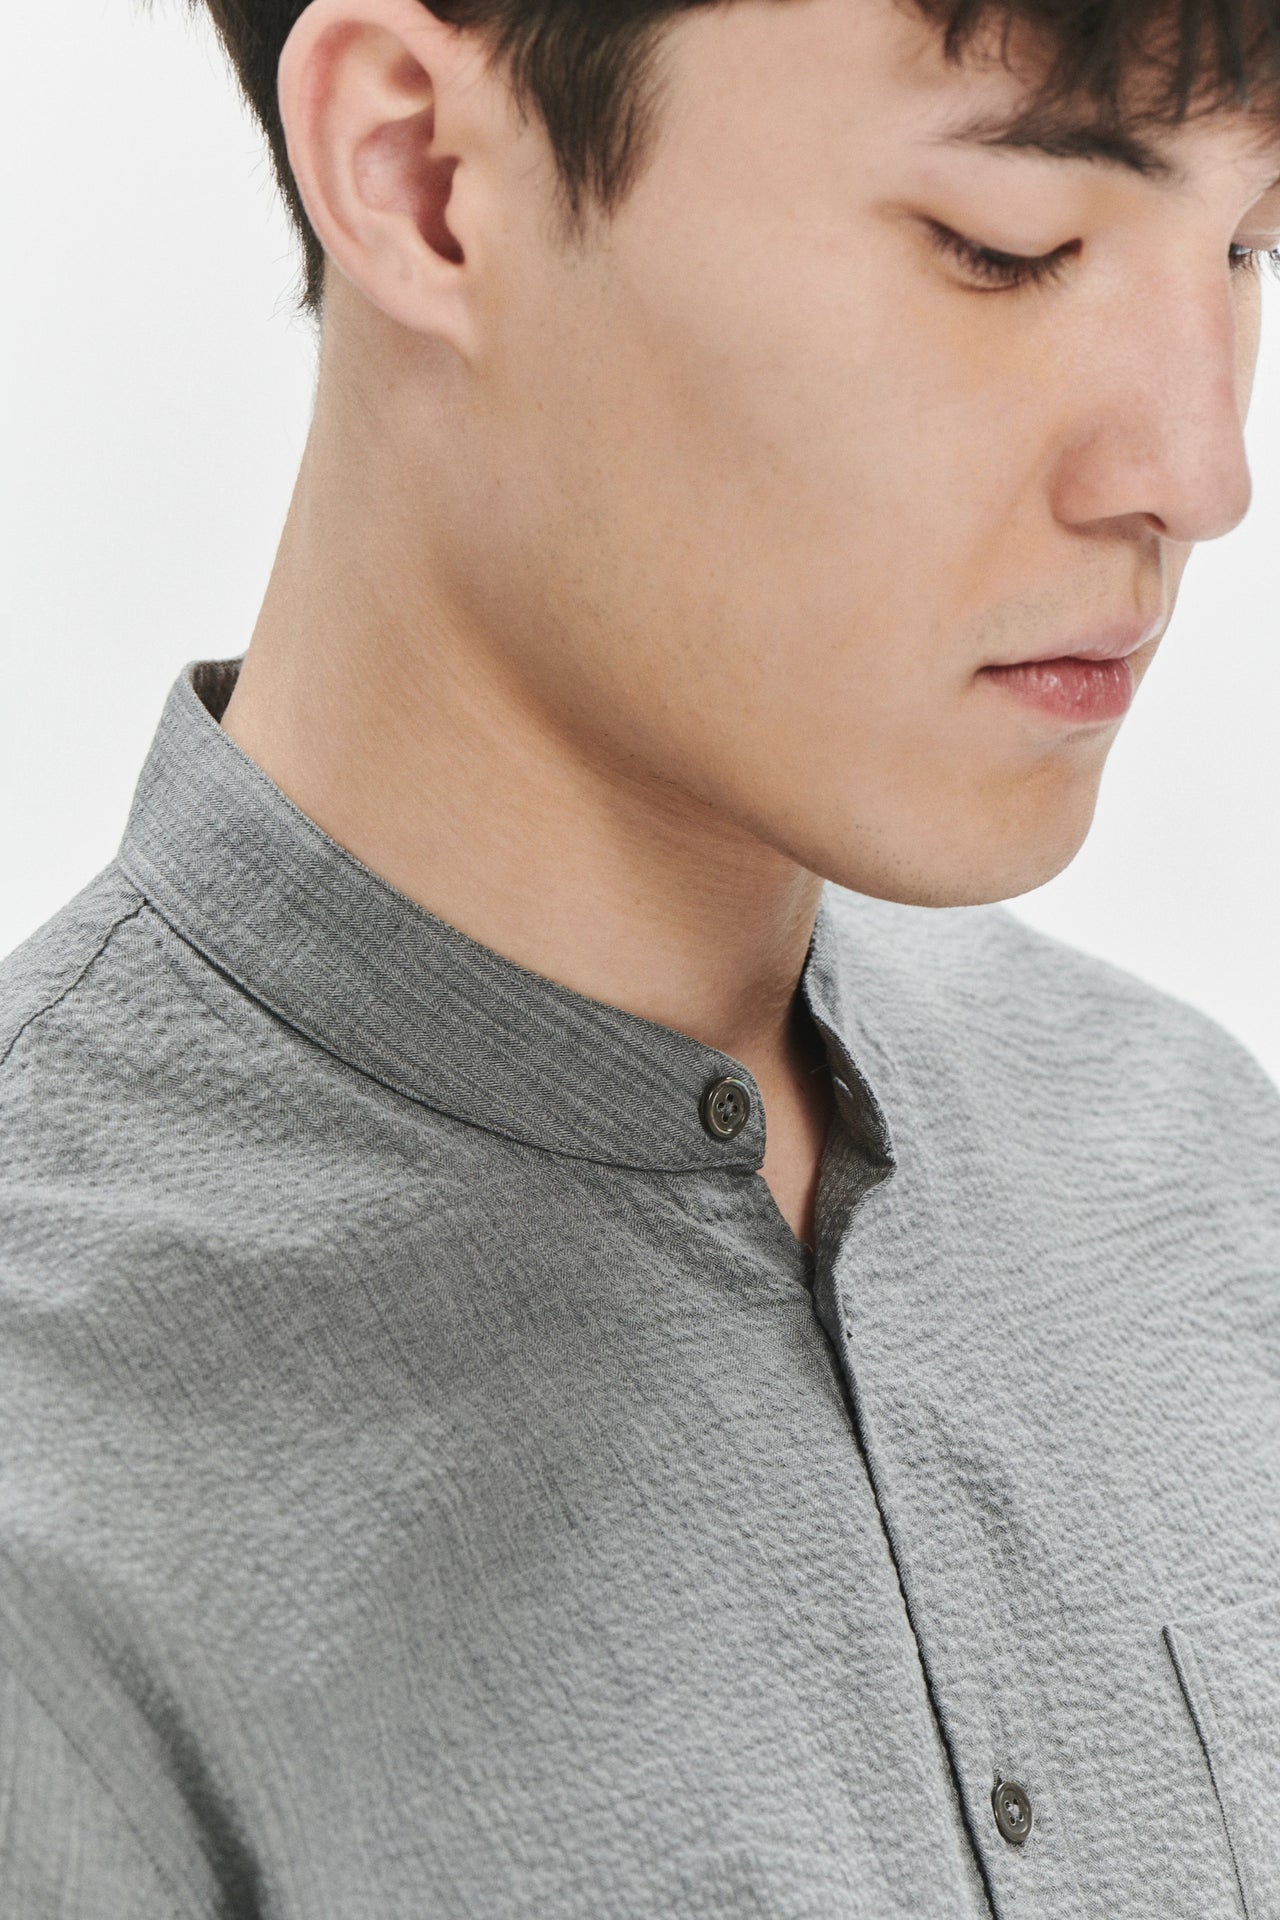 Zen Shirt in a Grey Pure Linen Italian Seersucker by Albini